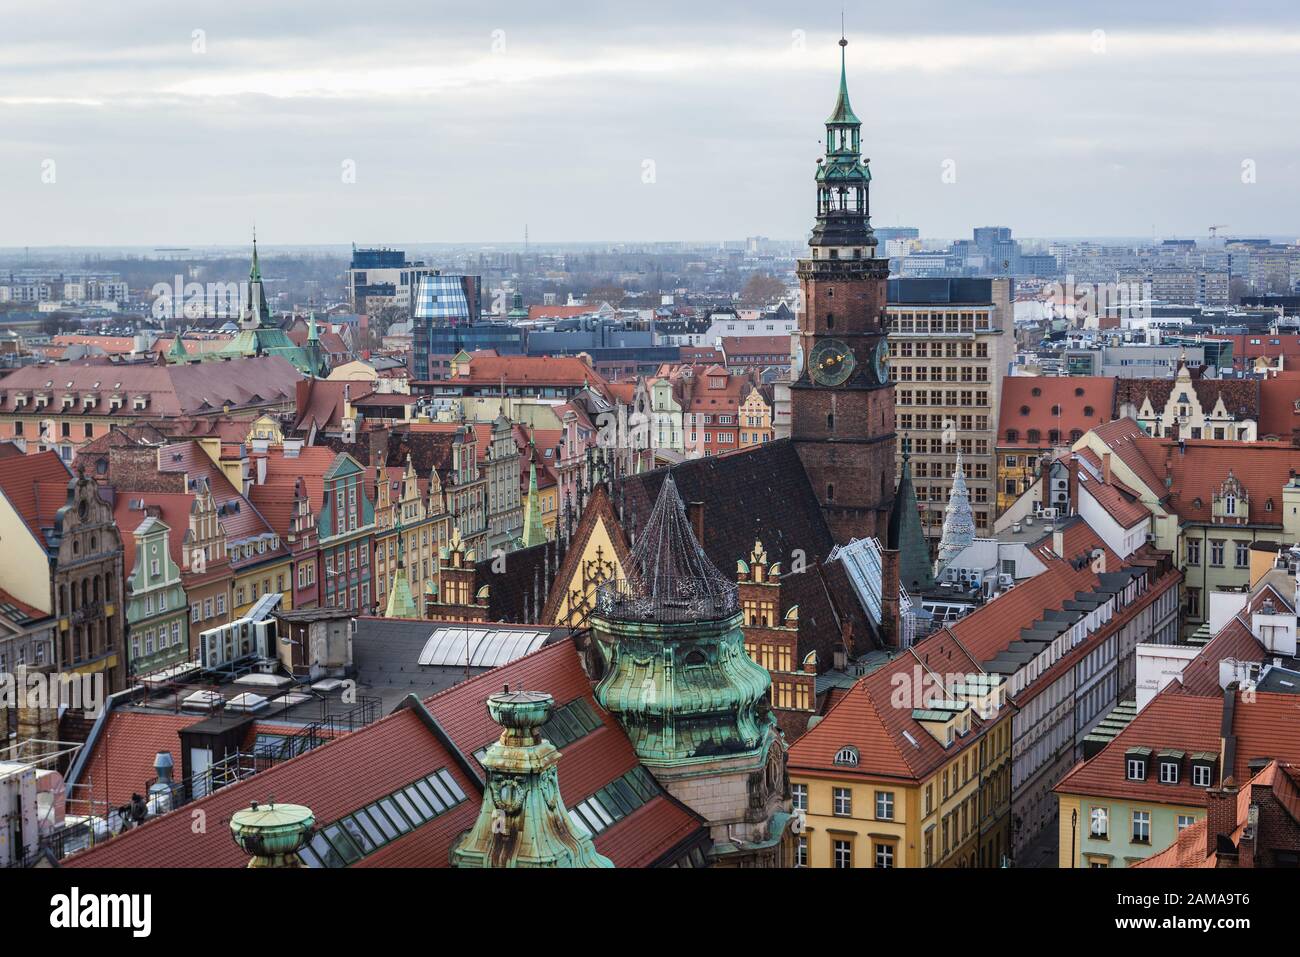 Alter Rathausturm von der sogenannten Hexenbrücke zwischen Türmen der gotischen Maria-Magdalena-Kathedrale in der Altstadt von Wroclaw, Polen Stockfoto